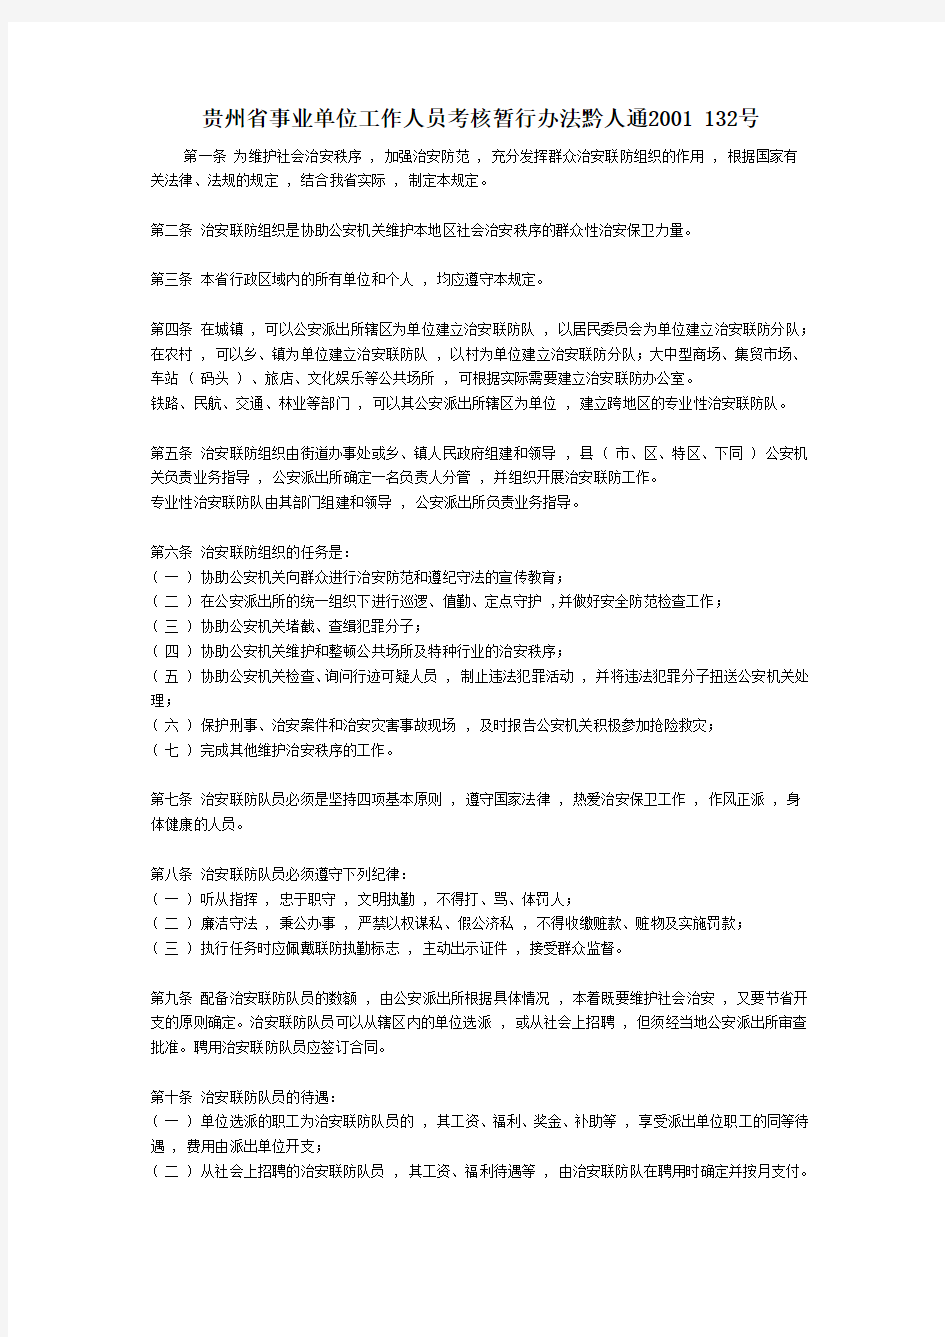 贵州省事业单位工作人员考核暂行办法黔人通2001 132号